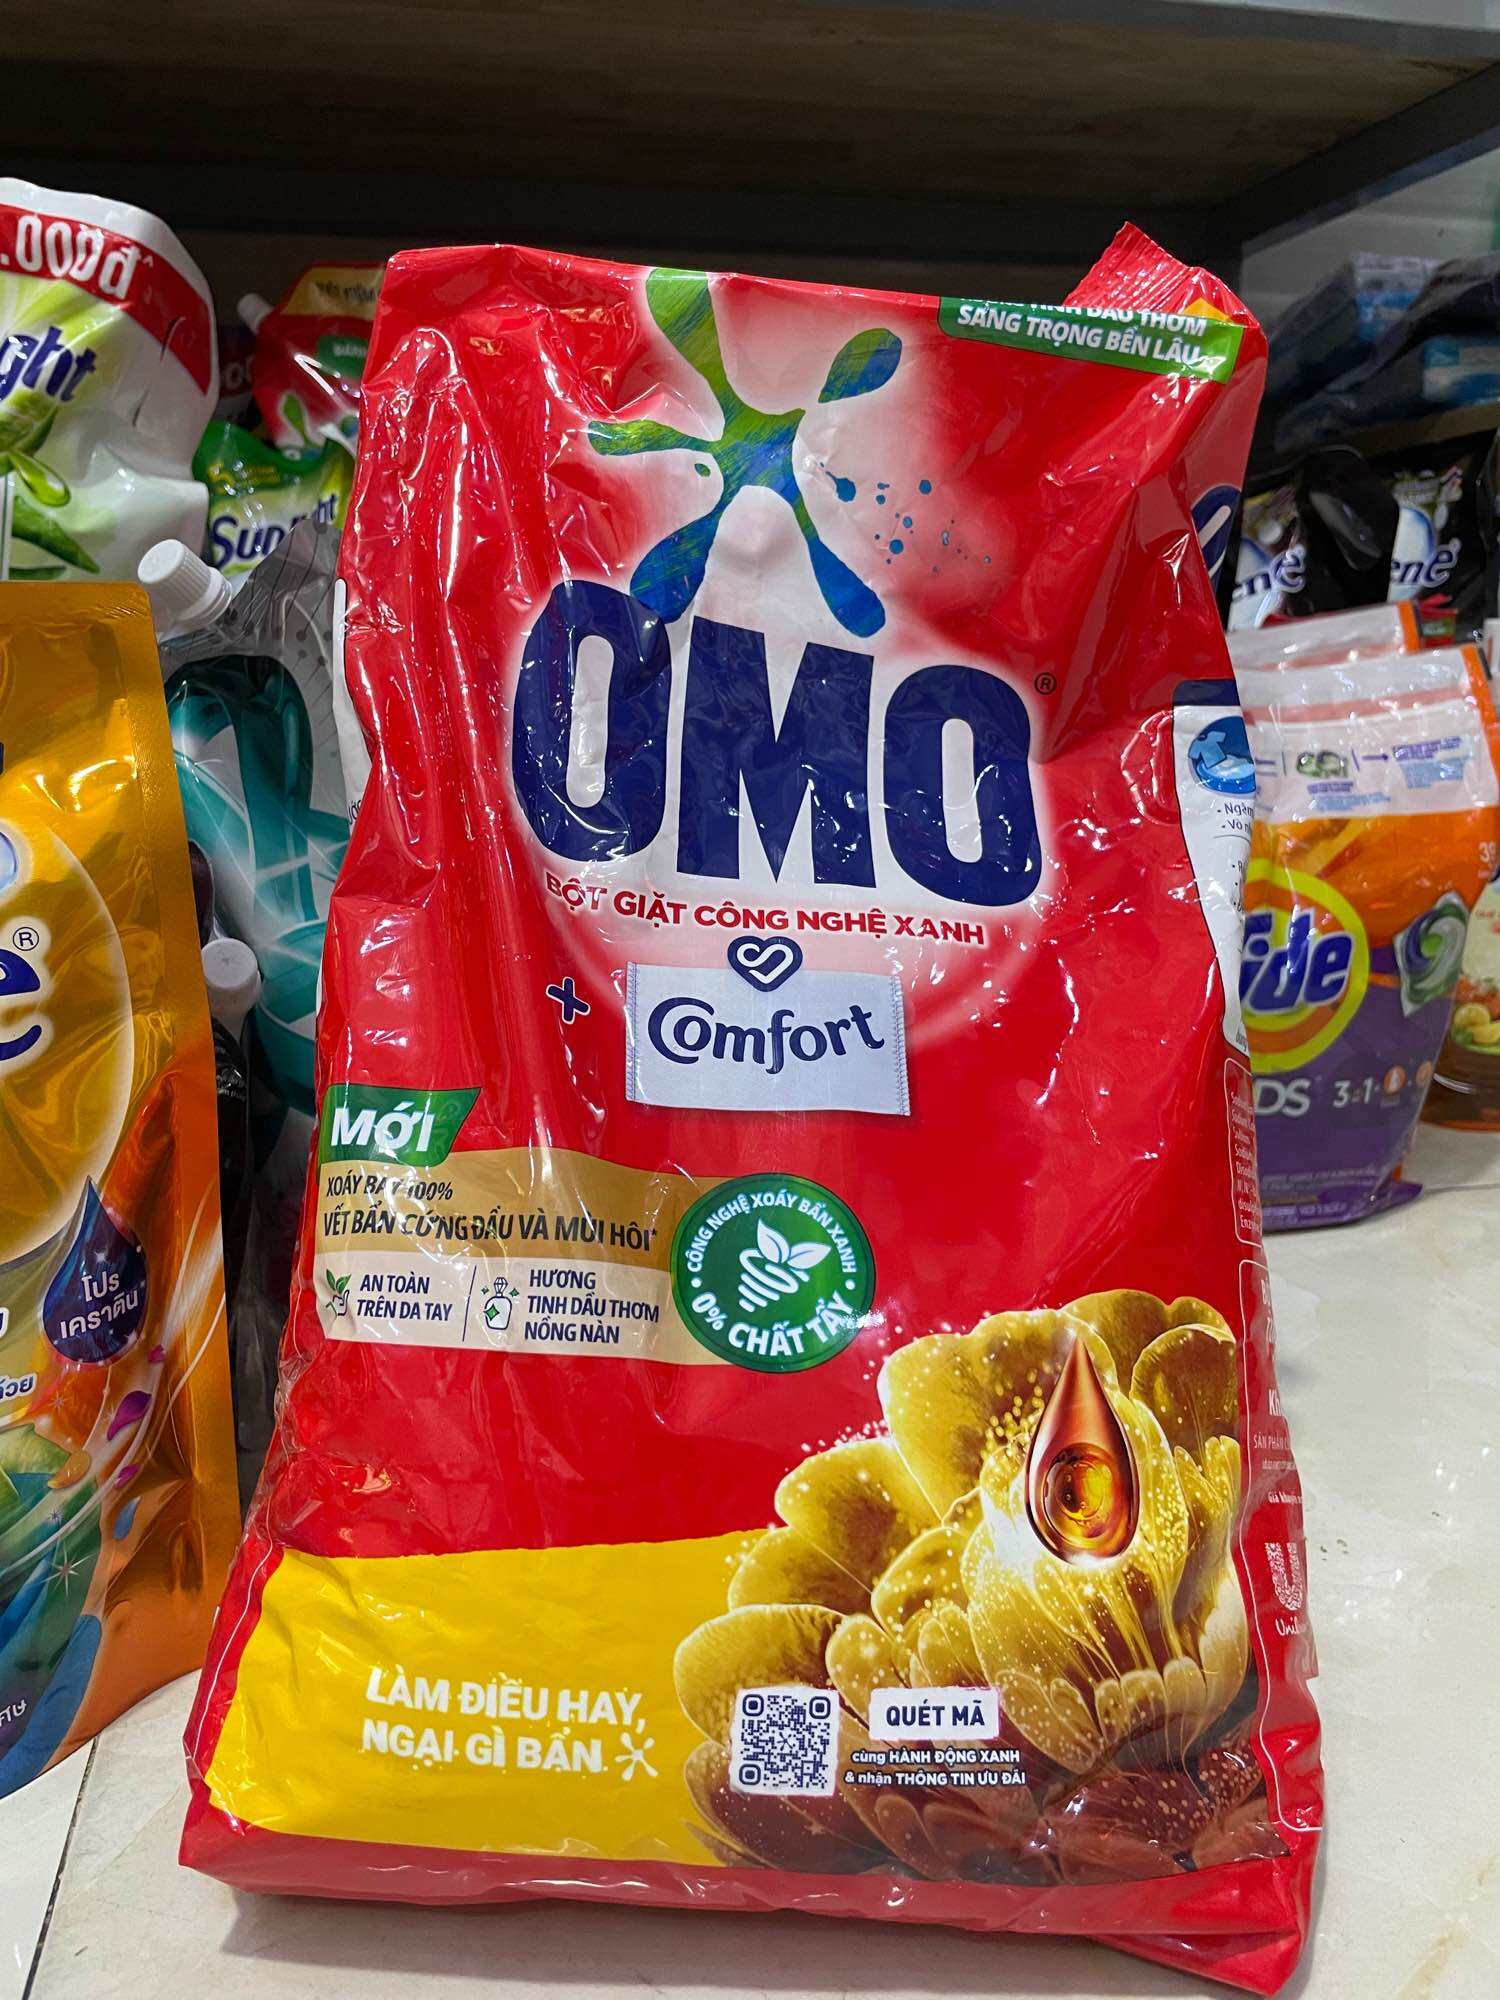 Bột giặt Omo 5,3kg có hương Comfort mới